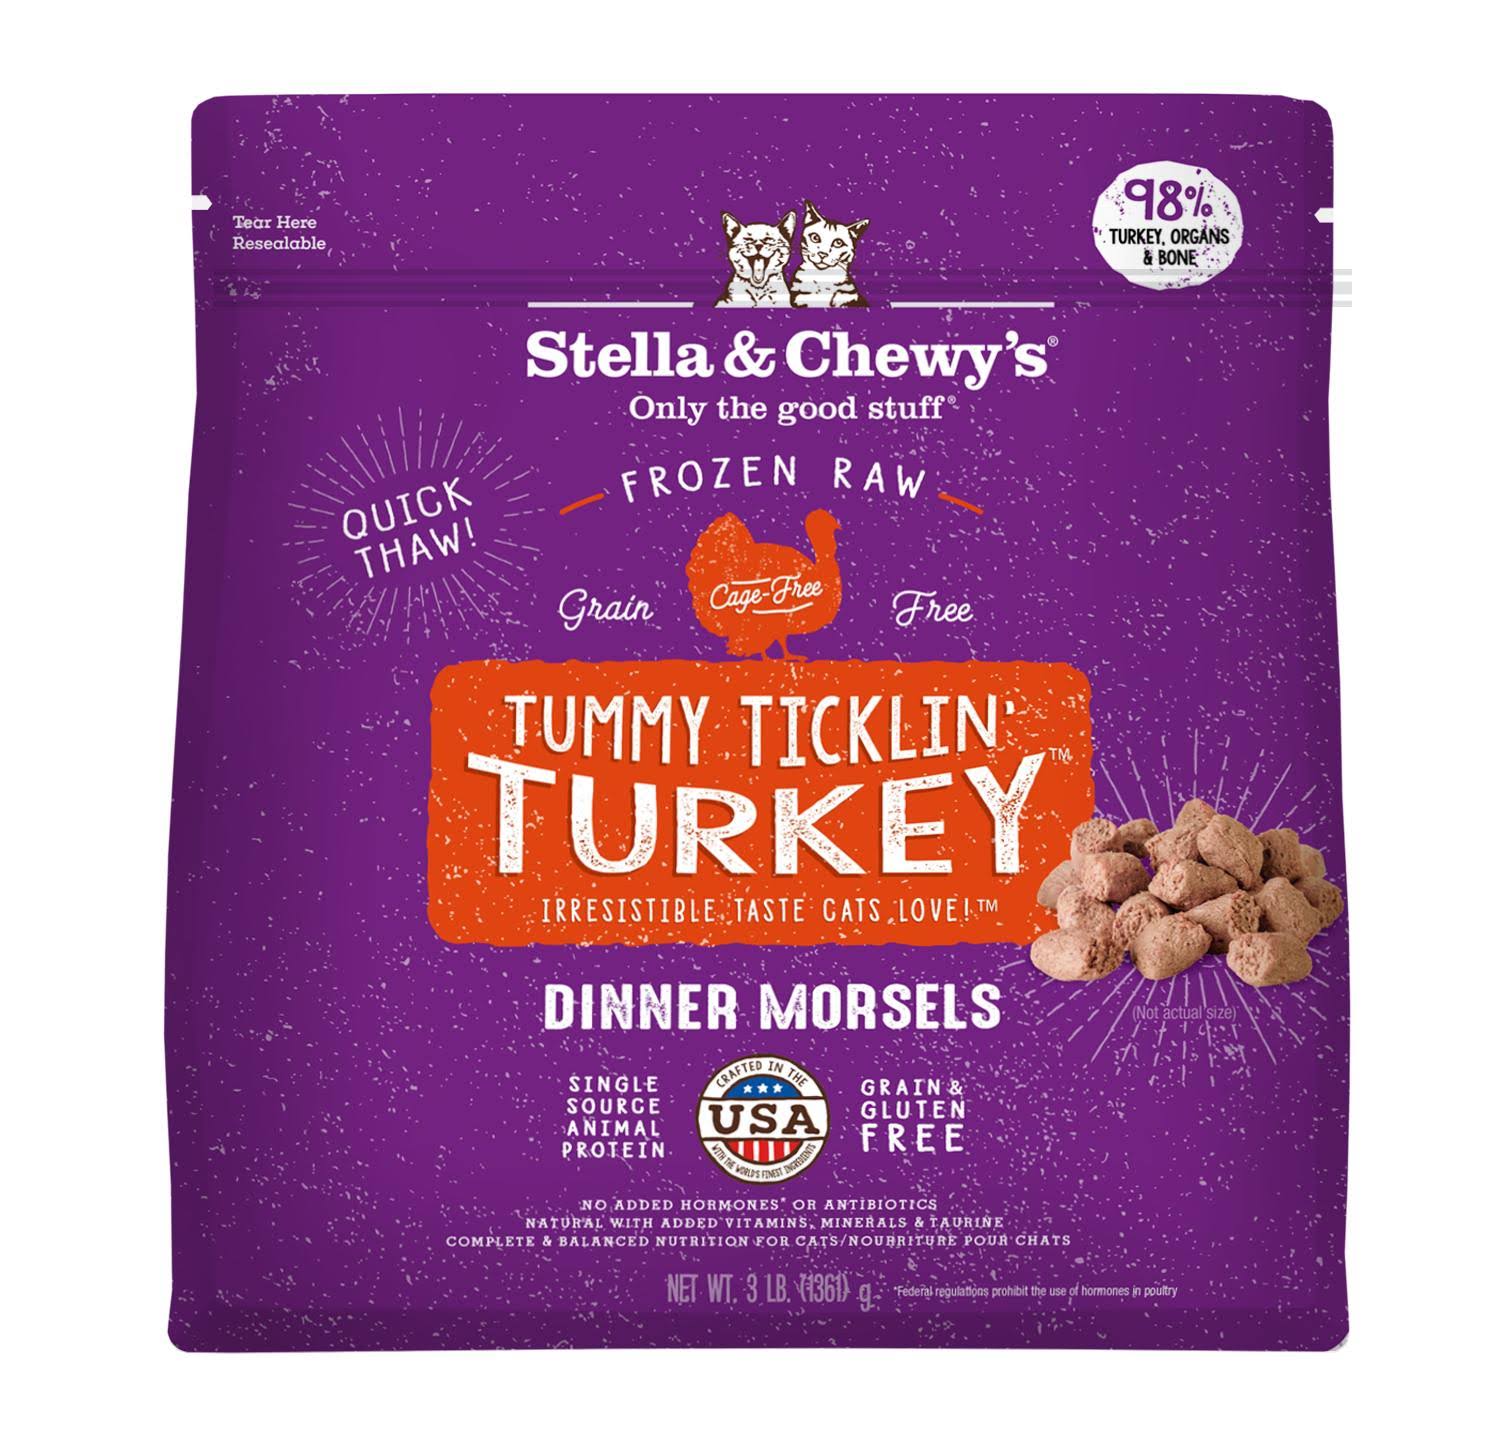 Stella & Chewy's Frozen Raw Cat Food - Tummy Ticklin' Turkey Dinner